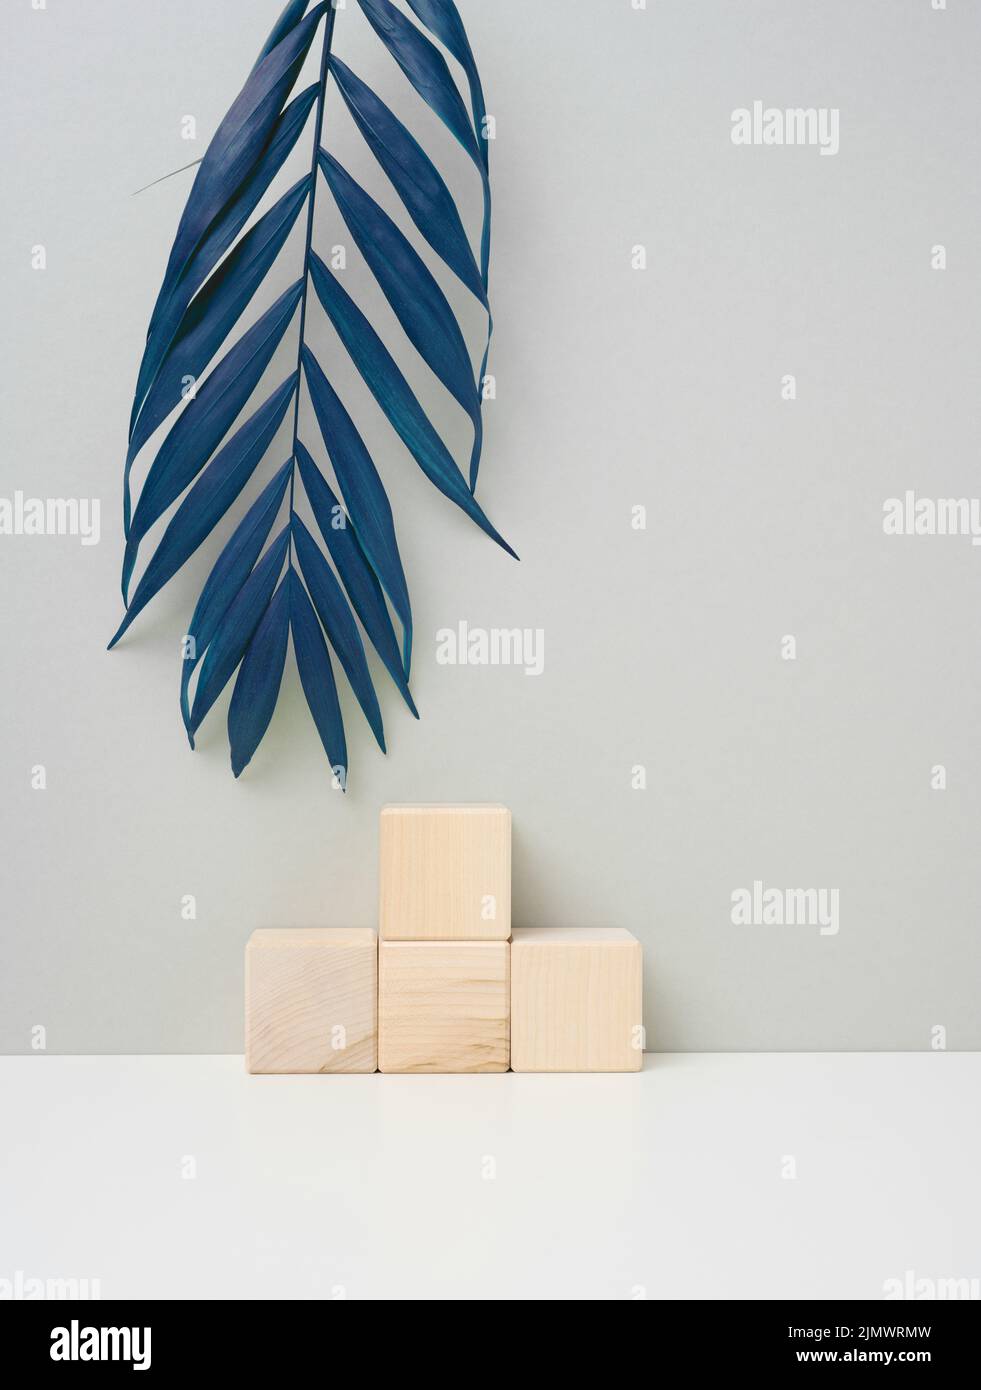 Cube en bois sur fond gris avec une feuille de palmier bleue. Étape de démonstration de produit, cosmétiques. Promotion et publicité Banque D'Images